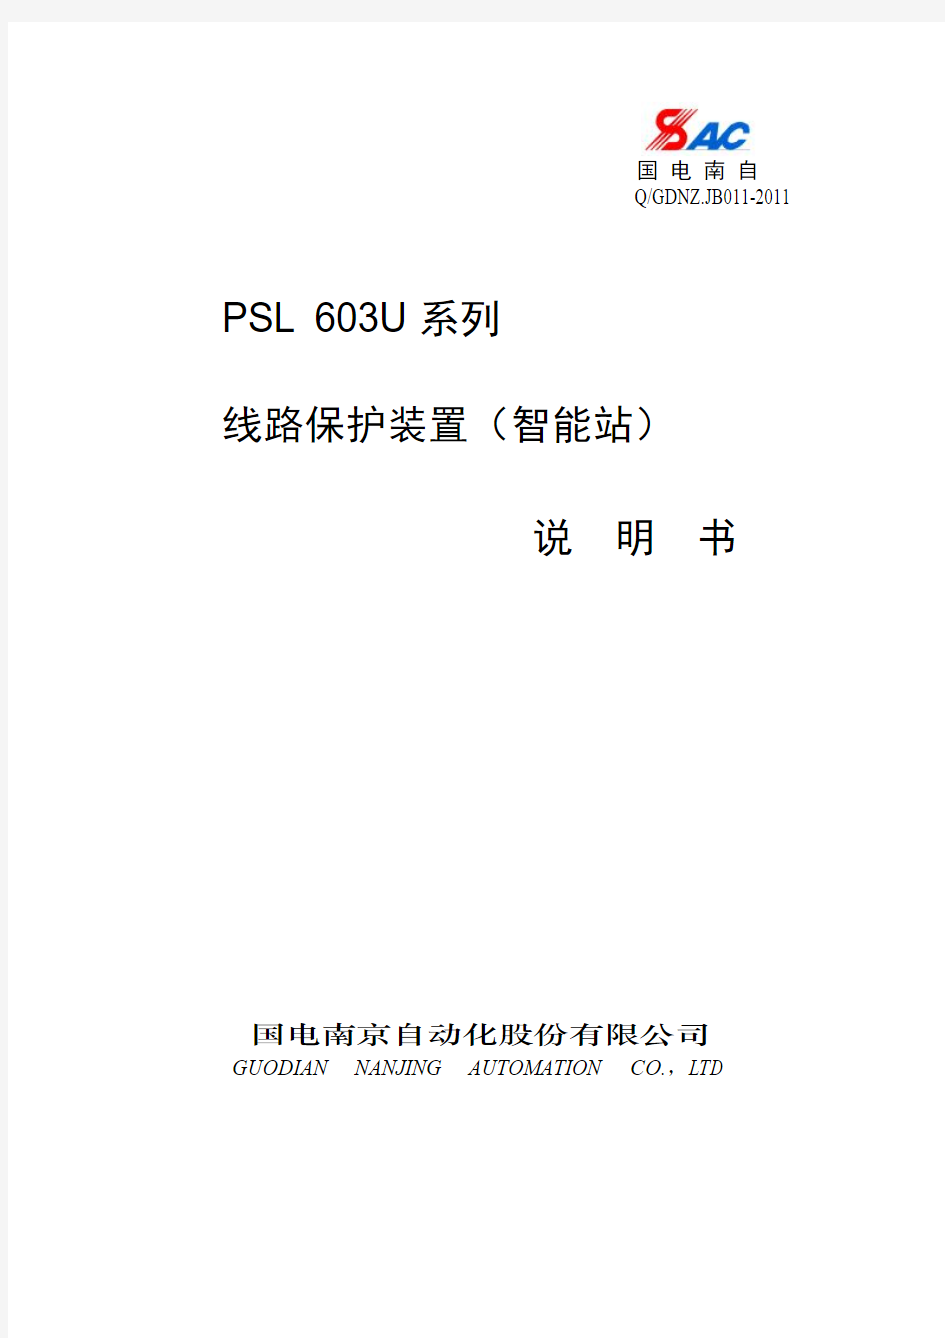 PSL 603U系列线路保护装置(智能站)说明书